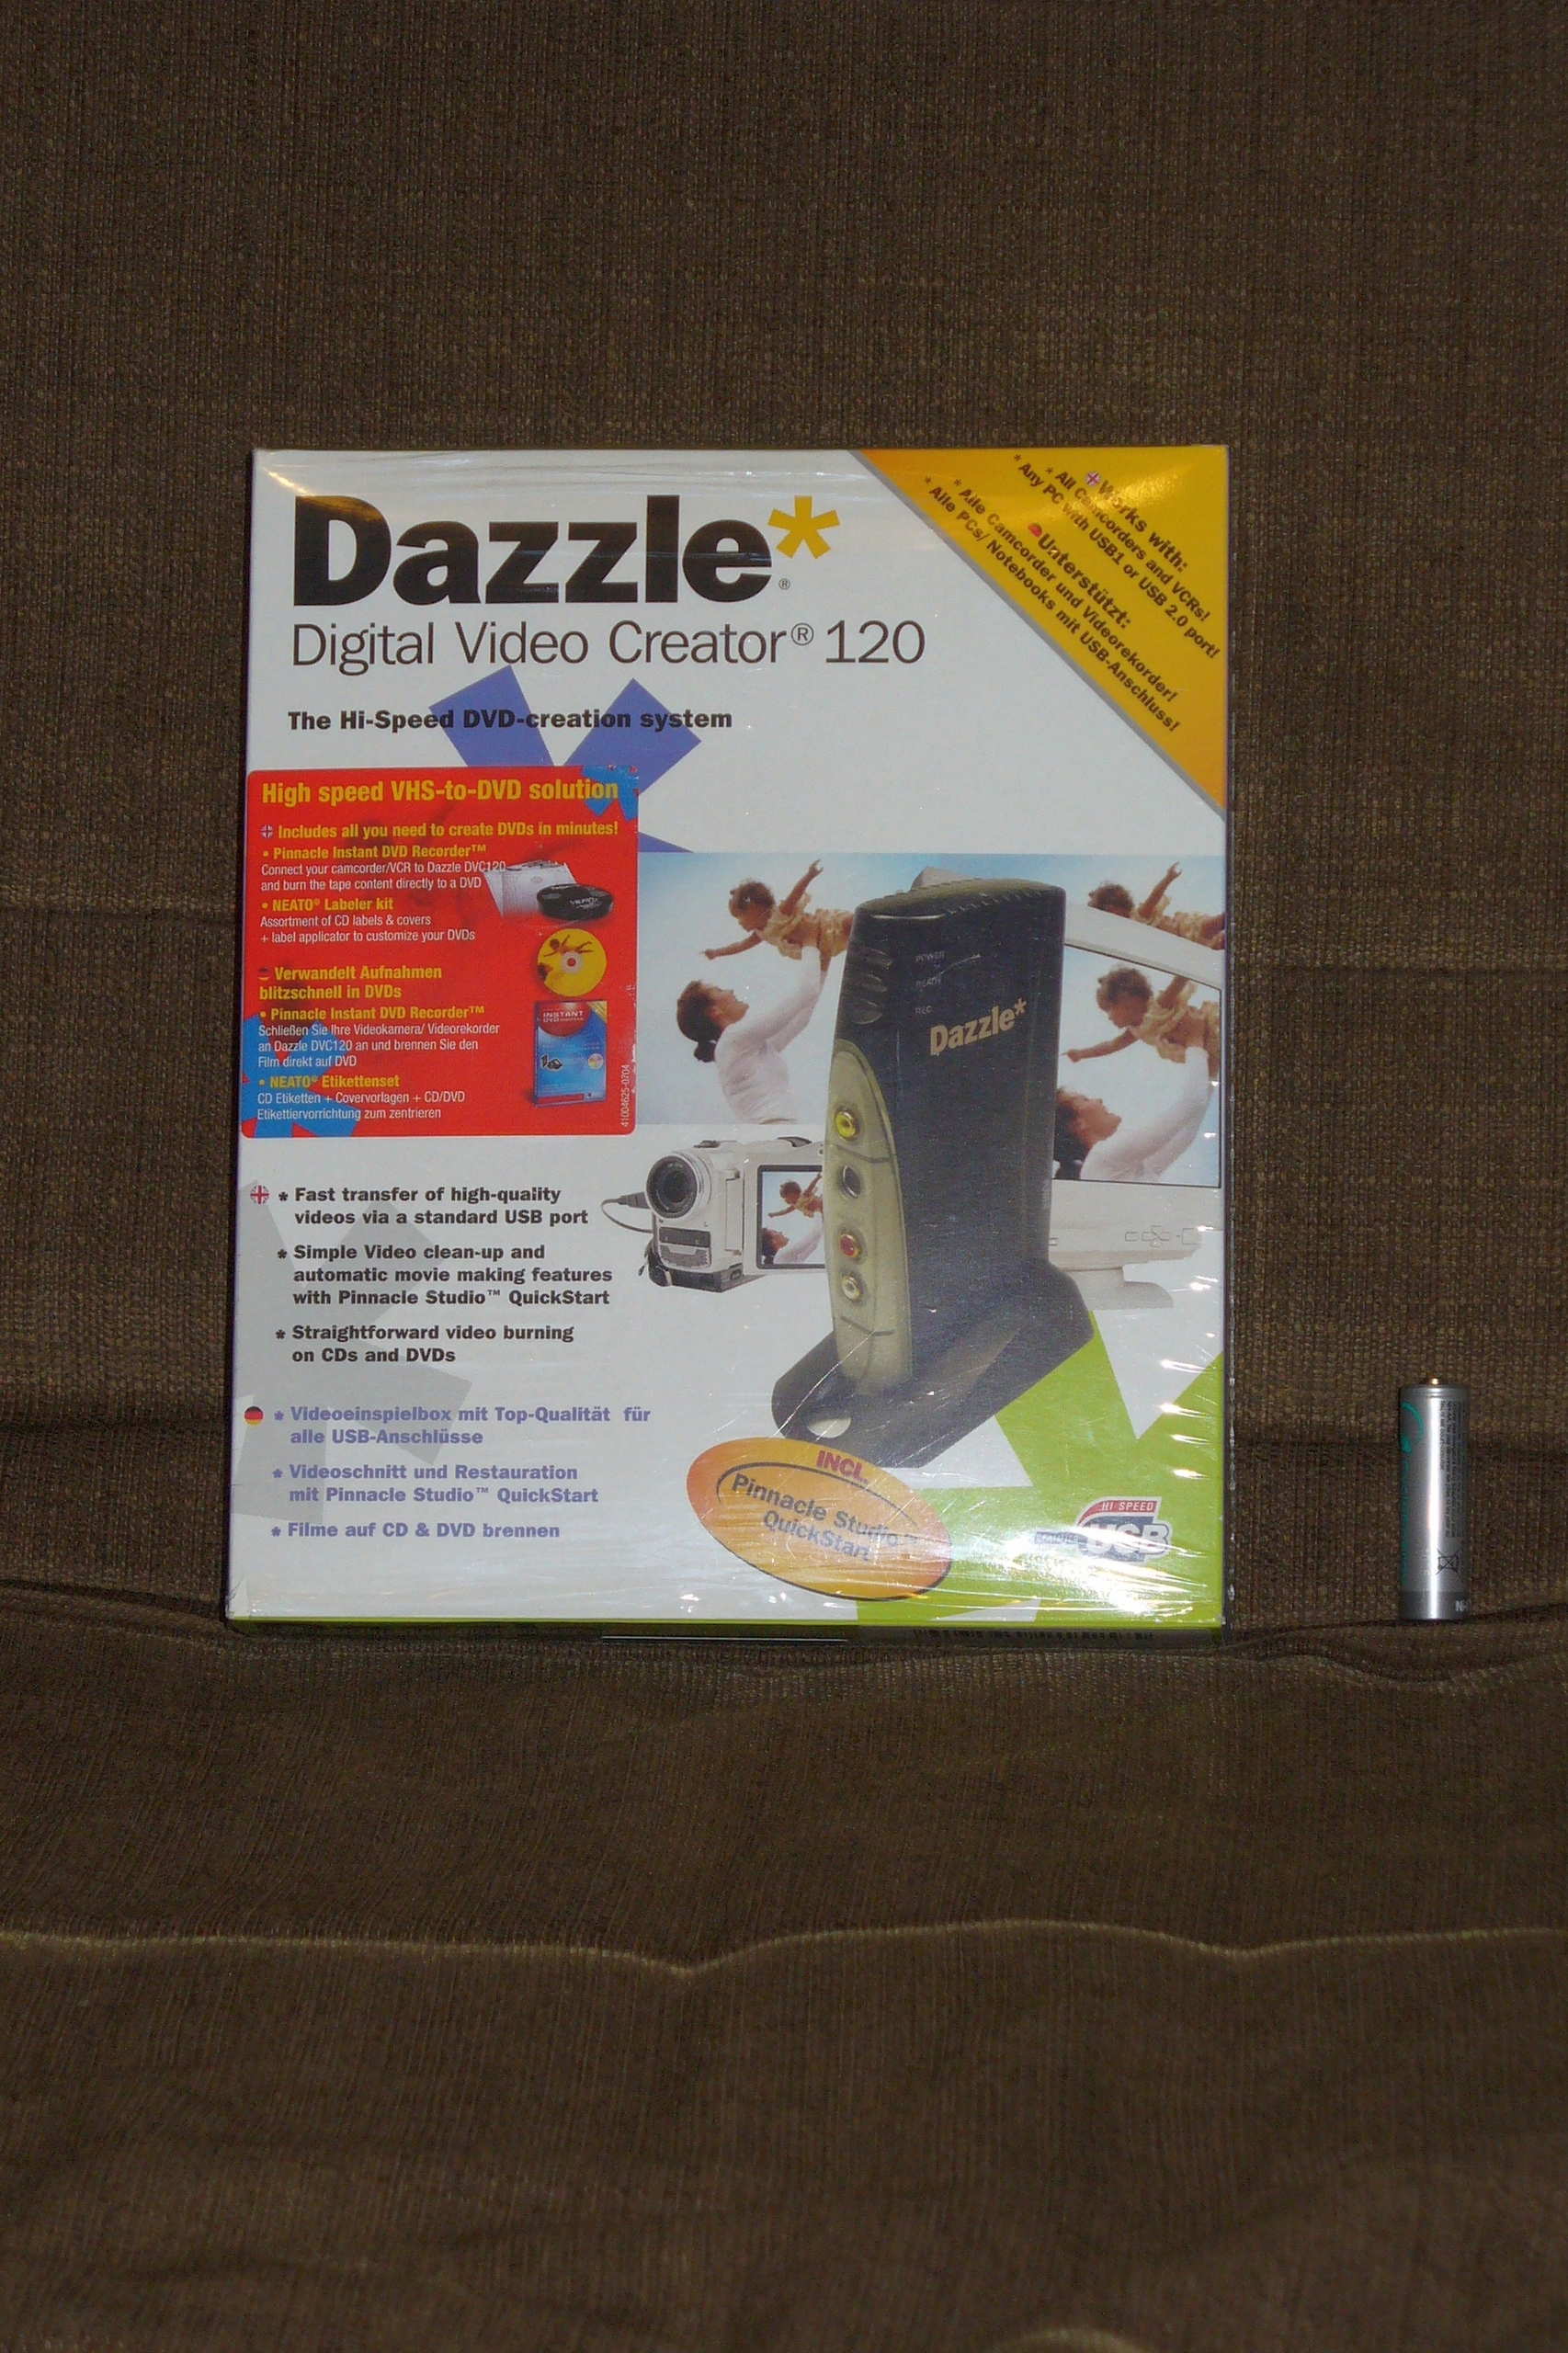 dazzle digital video creator software